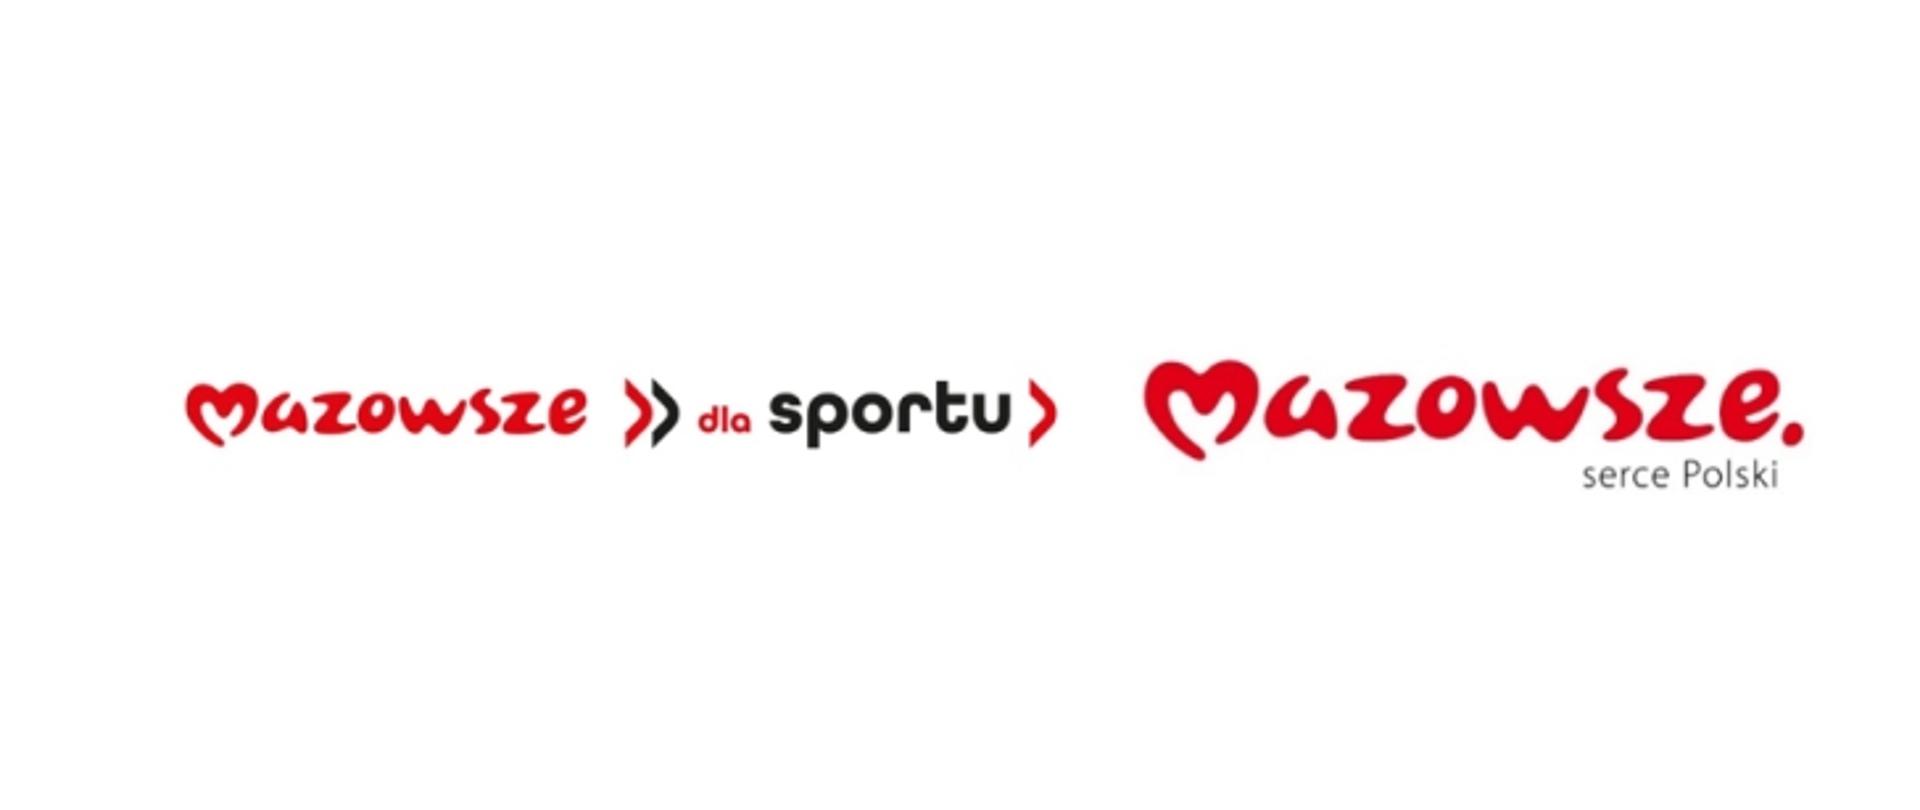 Logotyp czerwony napis "Mazowsze" czarny kolor "dla sportu" jeszcze raz logotyp czerwony napis "Mazowsze" i szary napis po prawej stronie "serce Polski"